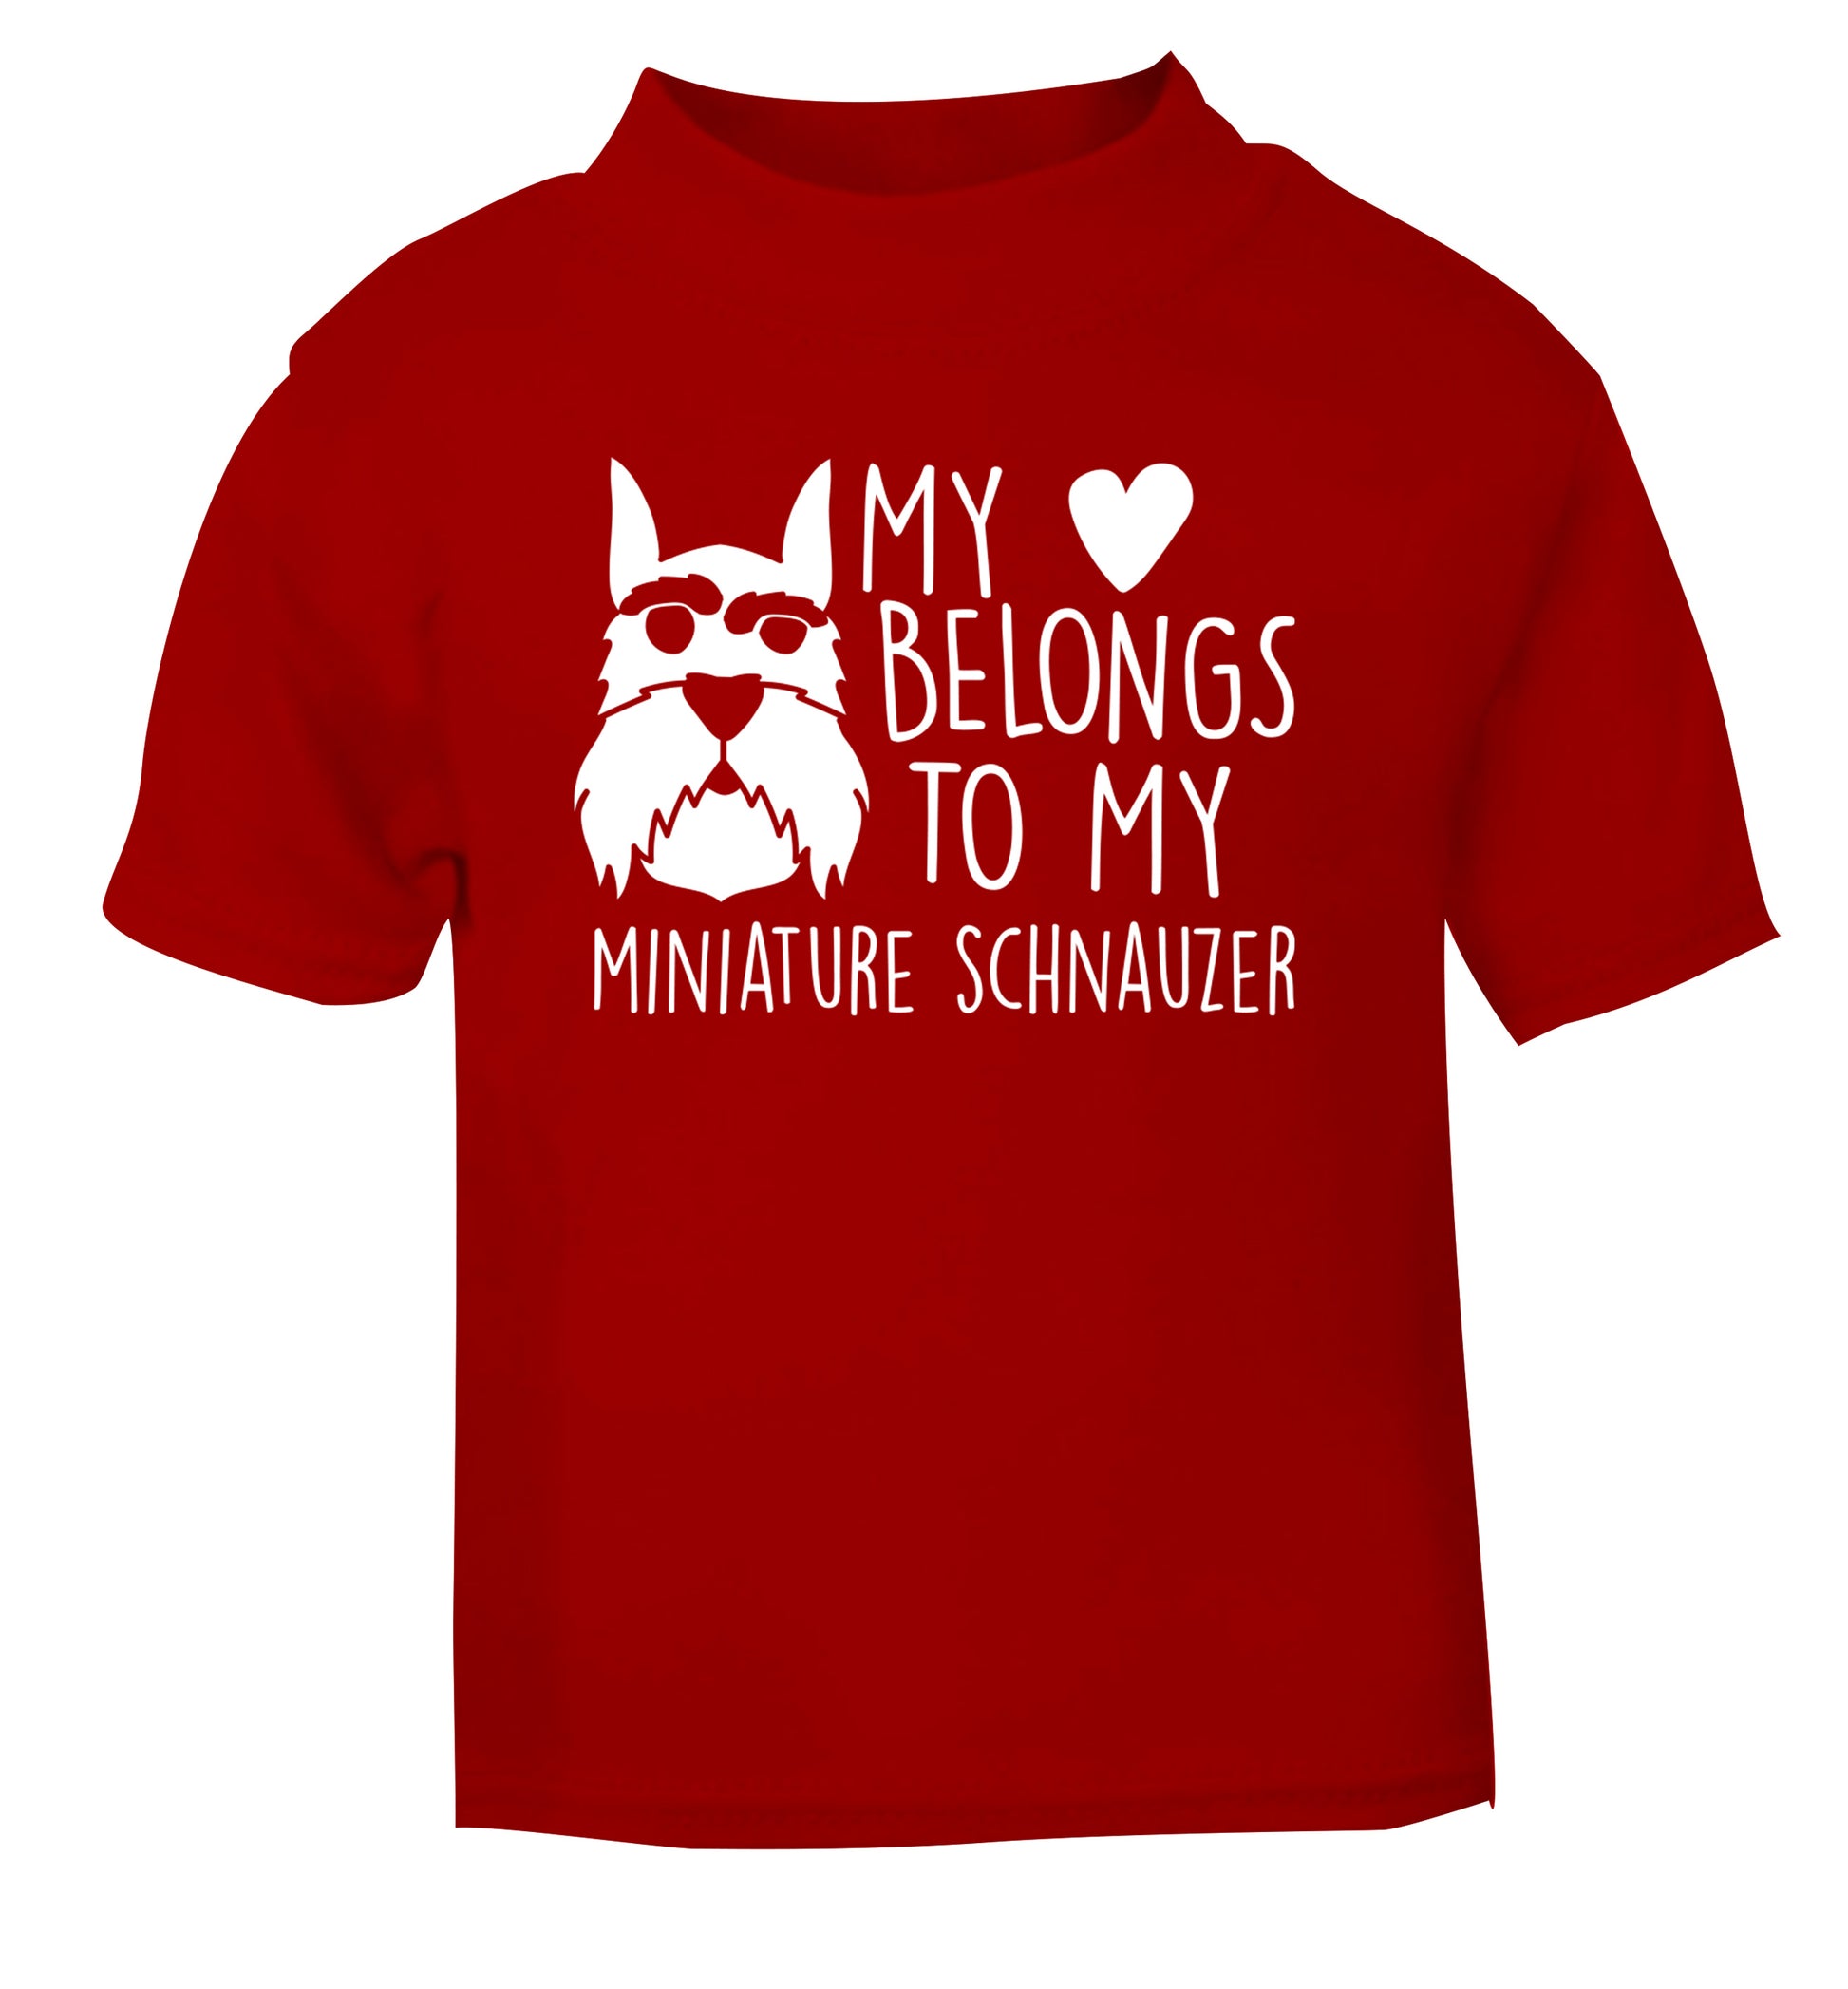 My heart belongs to my miniature schnauzer red Baby Toddler Tshirt 2 Years